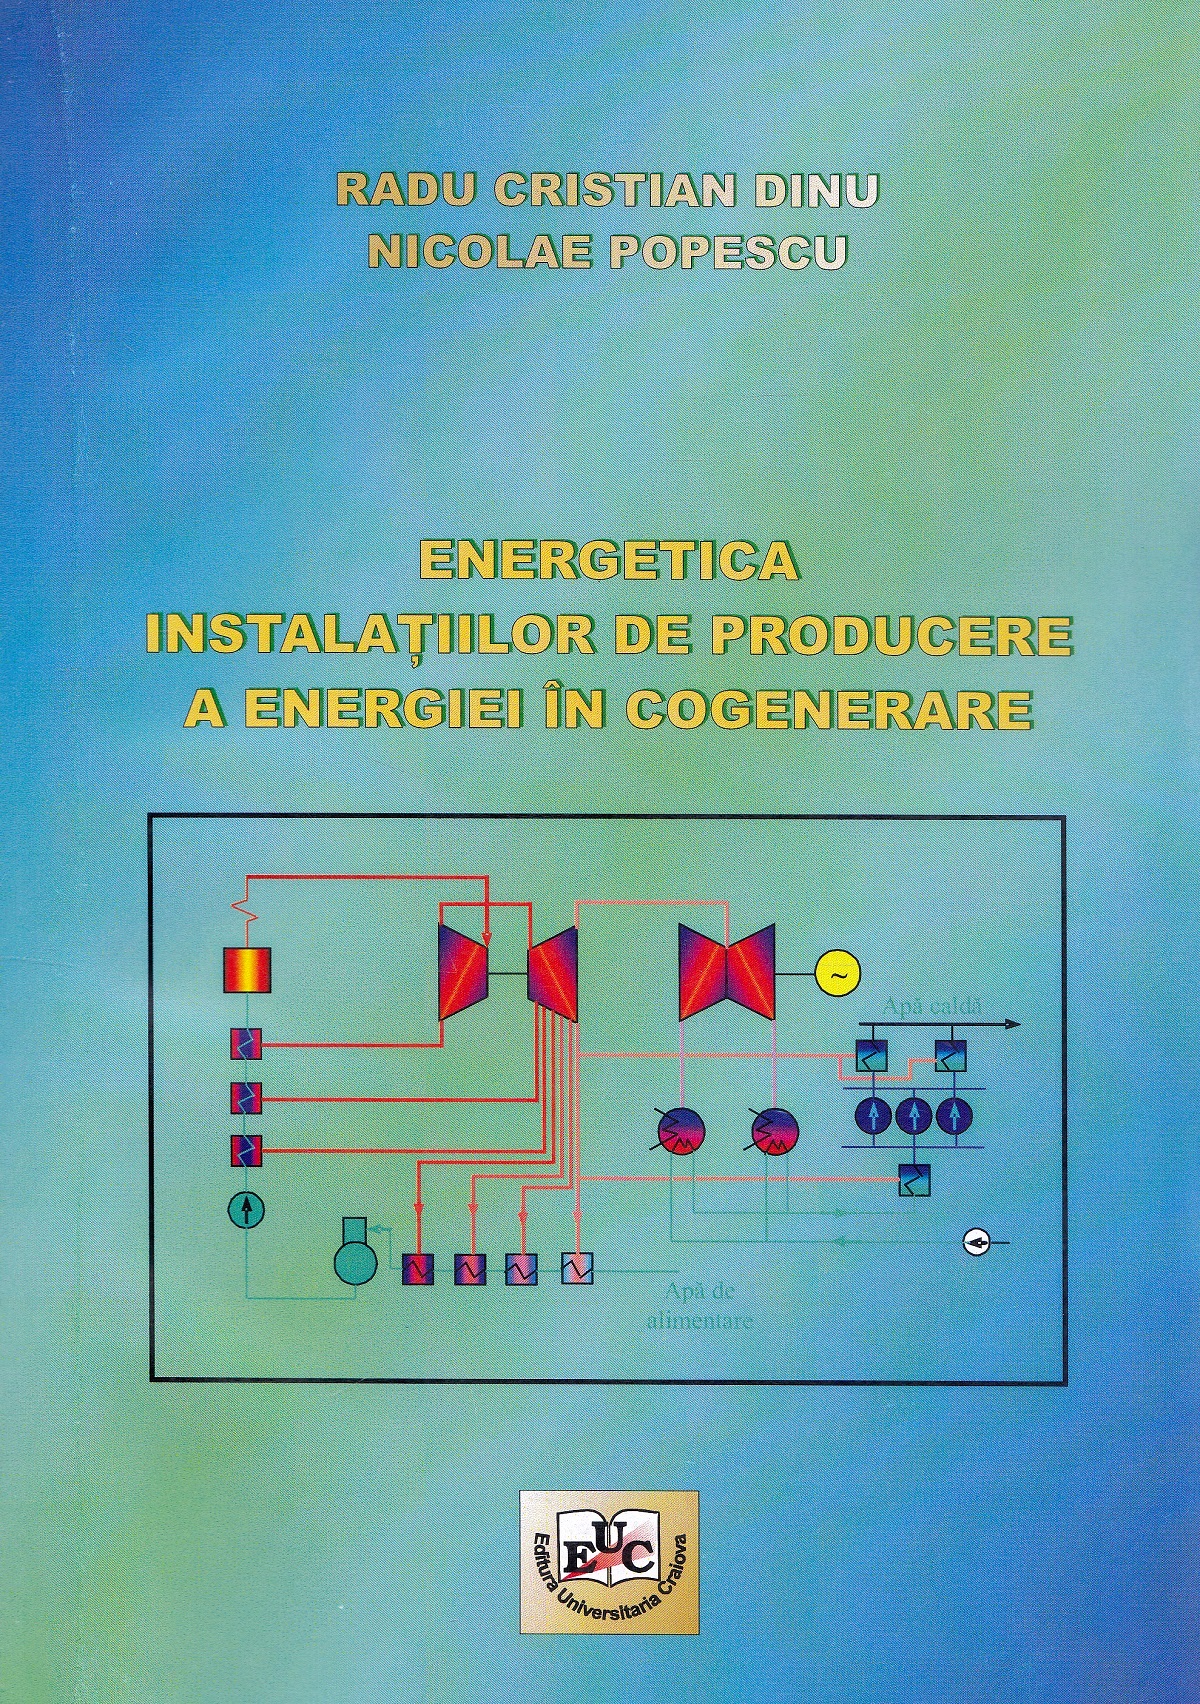 Energetica instalatiilor de producere a energiei in cogenerare - Radu Cristian Dinu, Nicolae Popescu